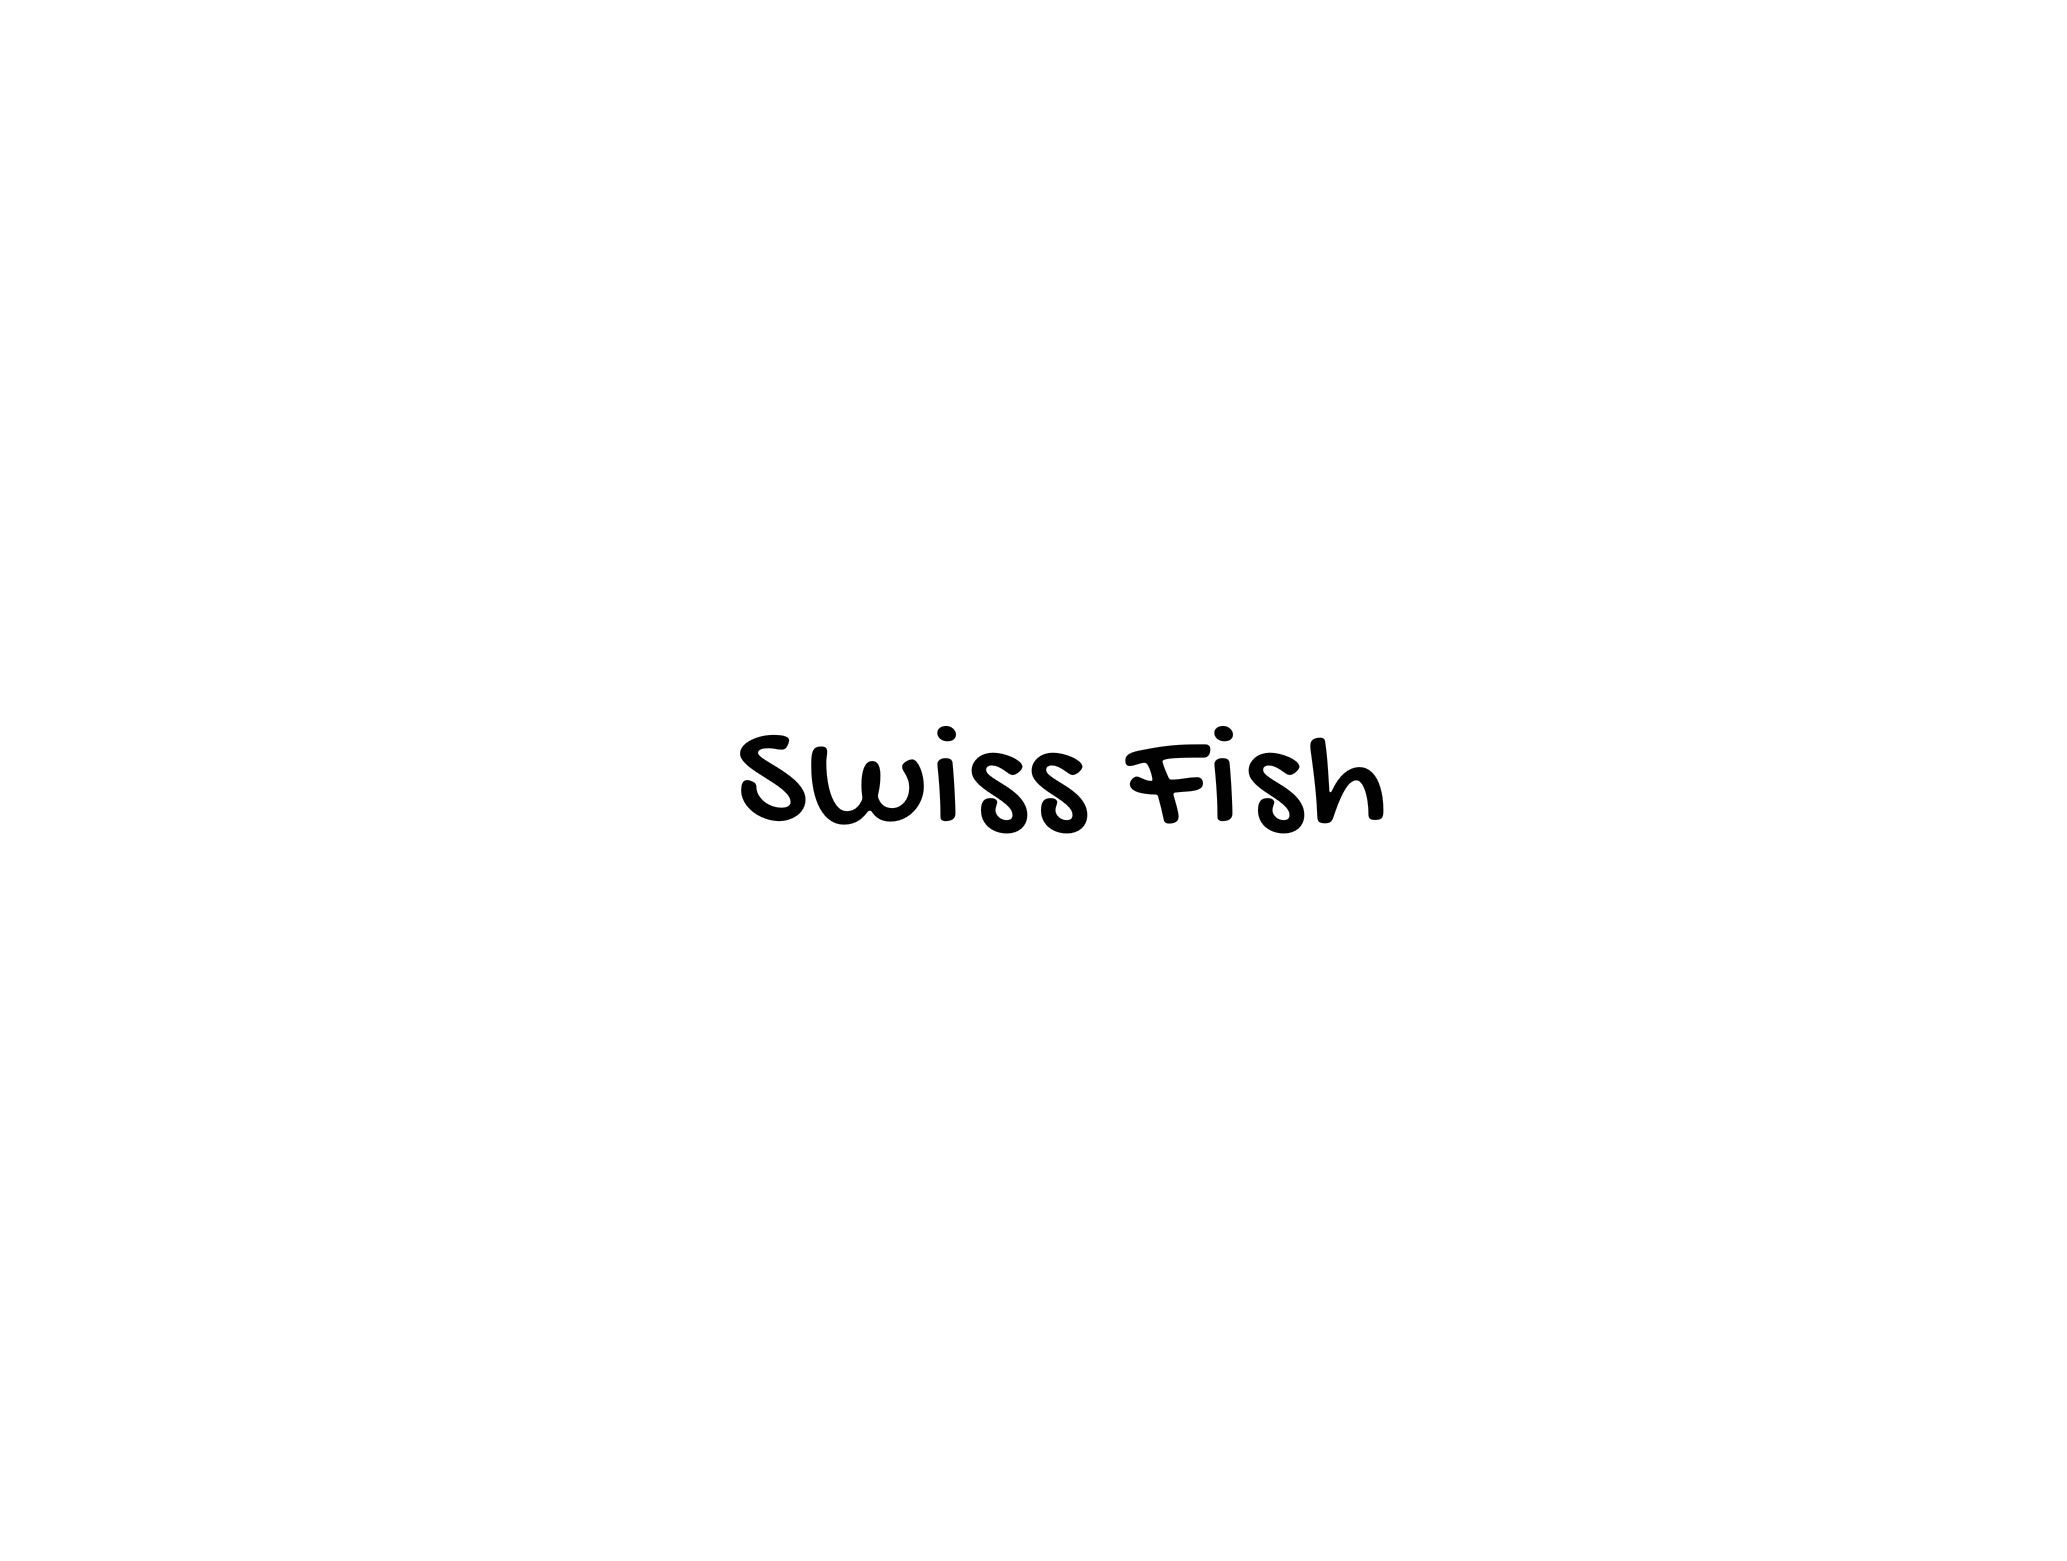 SwissFish